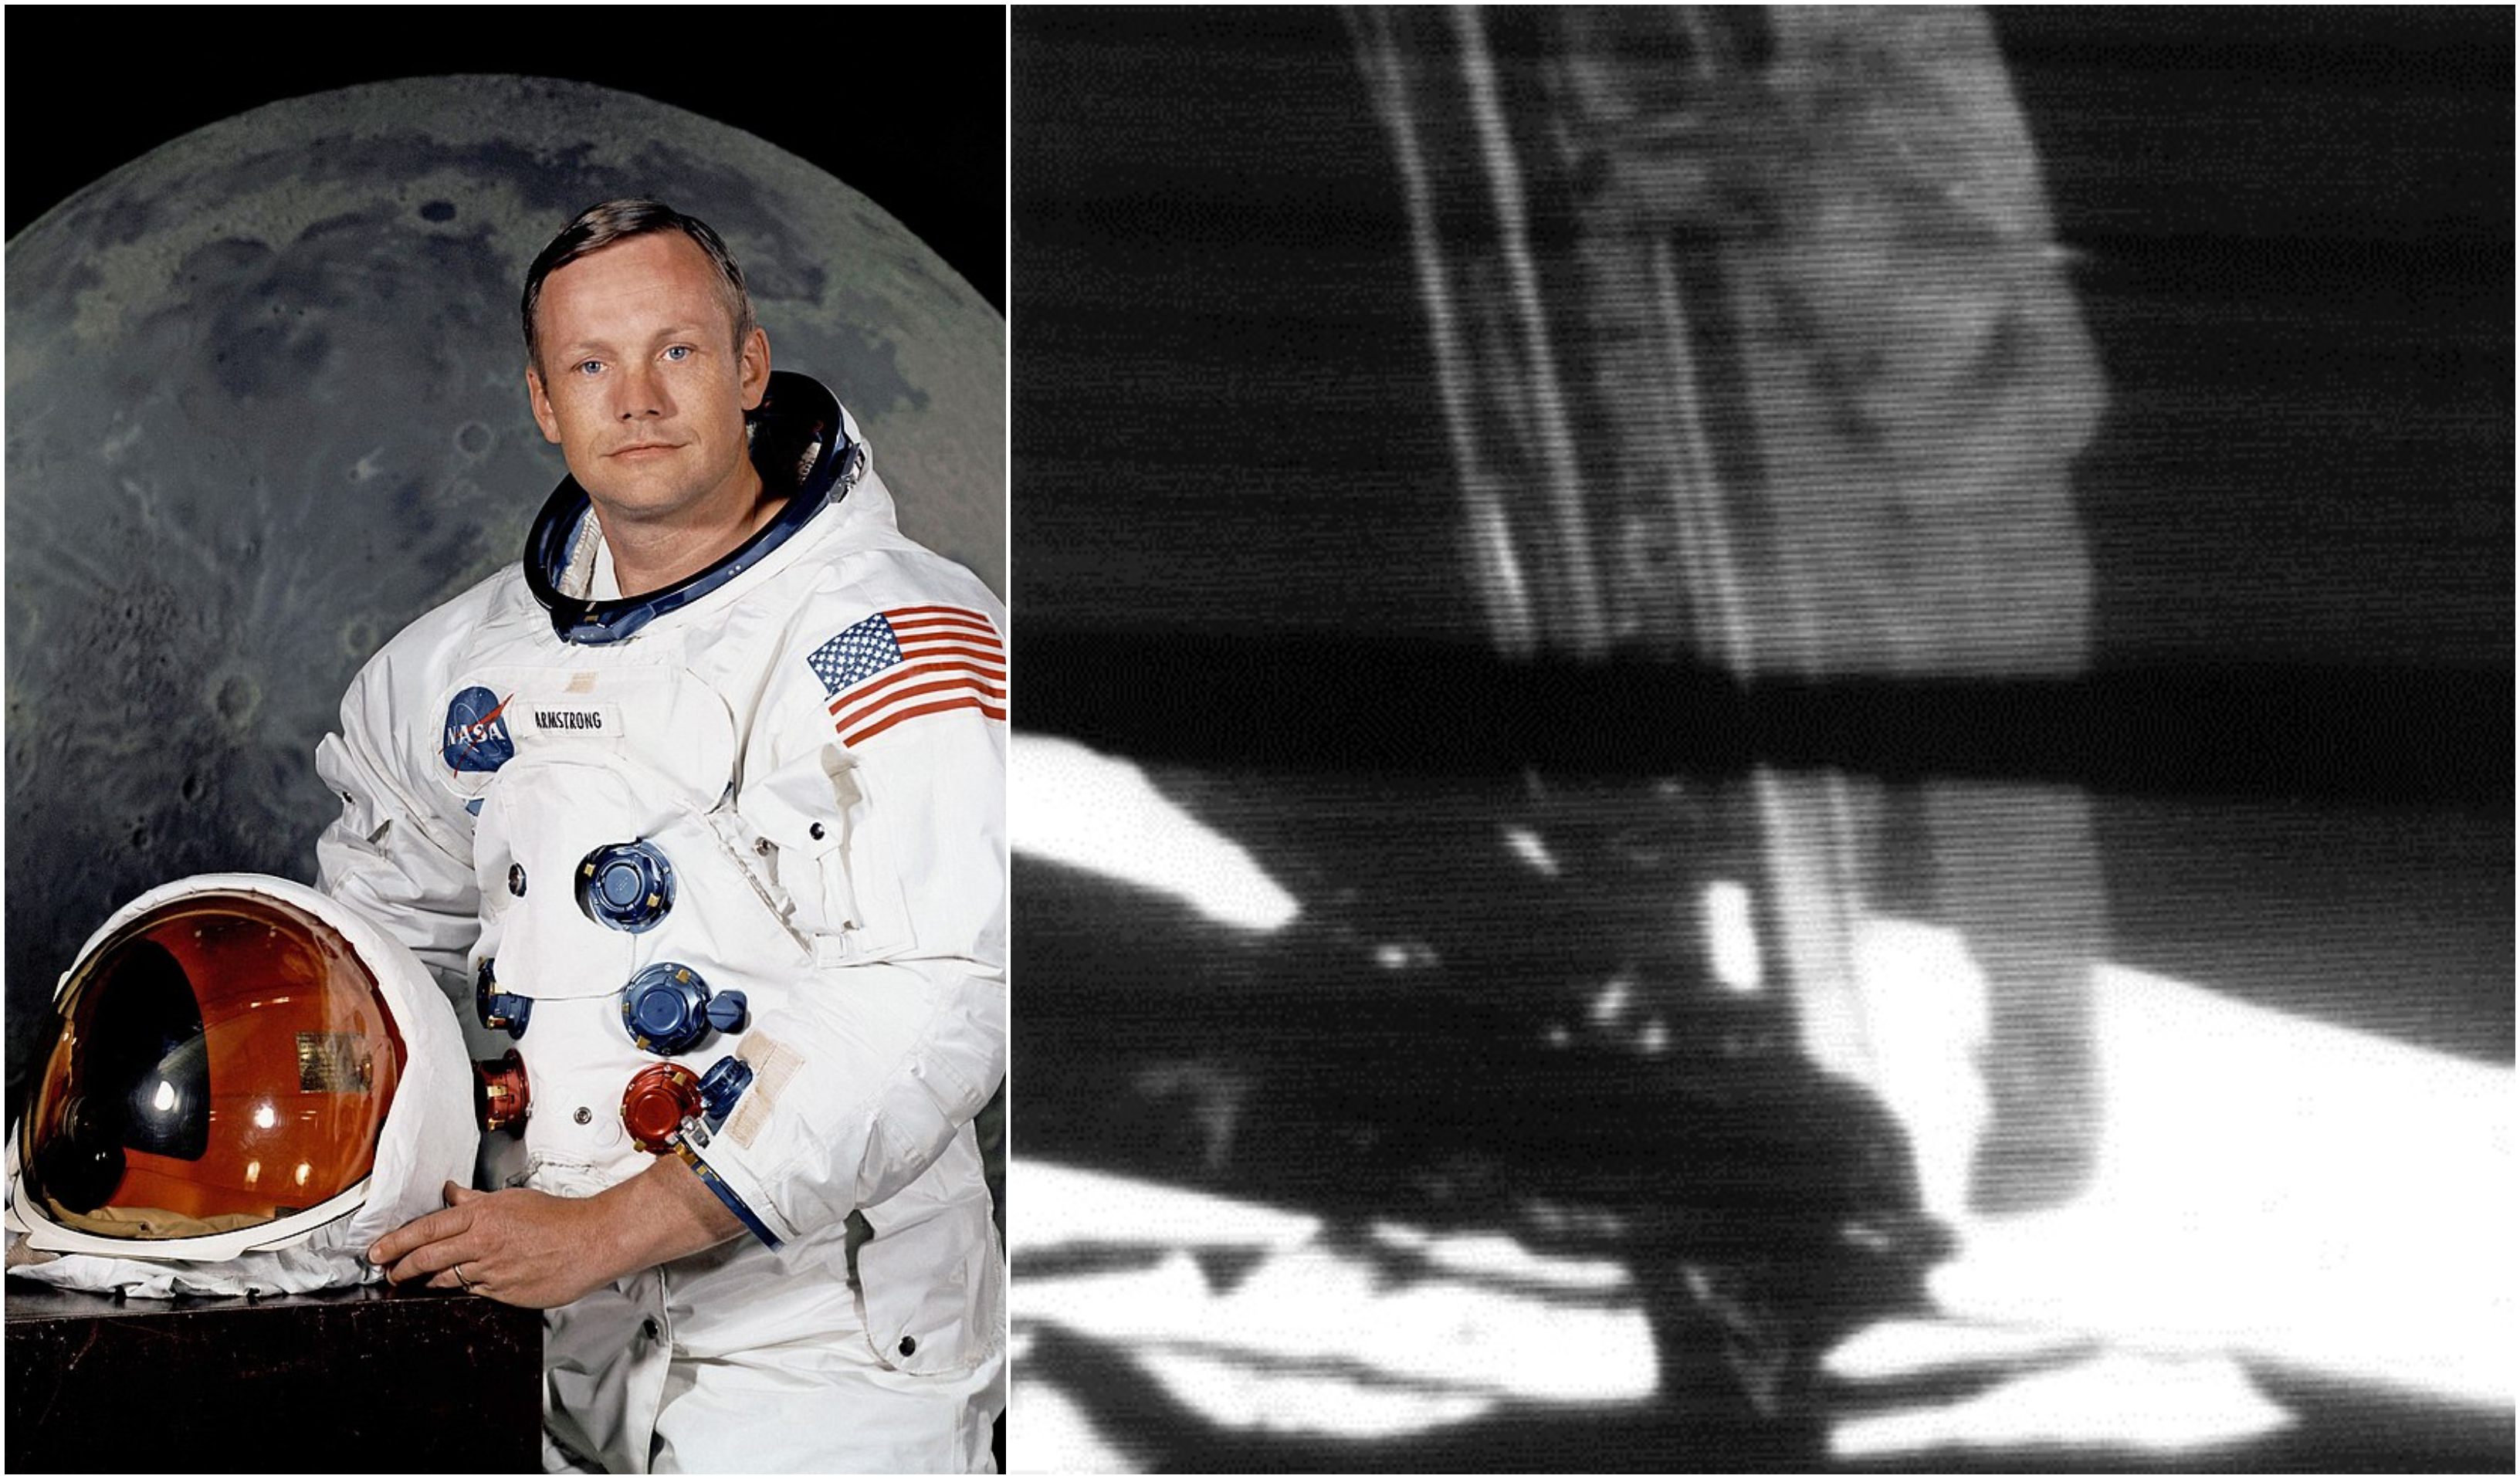 Διαστημική αποστολή Apollo 11: Έτσι επέλεξαν τον Νιλ Άρμστρονγκ στο πλήρωμα